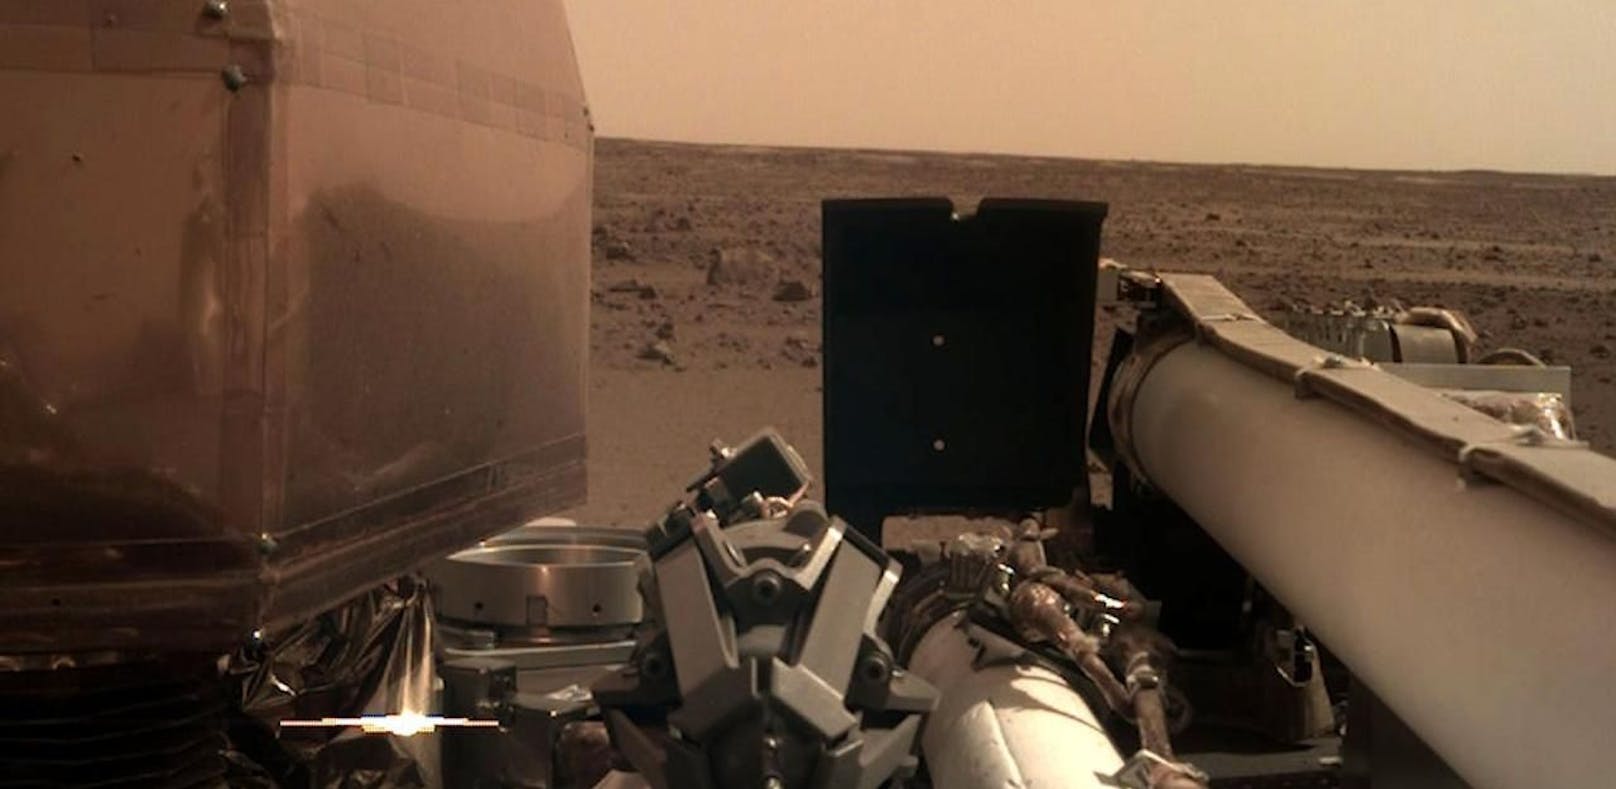 Sonde liefert erste Bilder von der Mars-Oberfläche